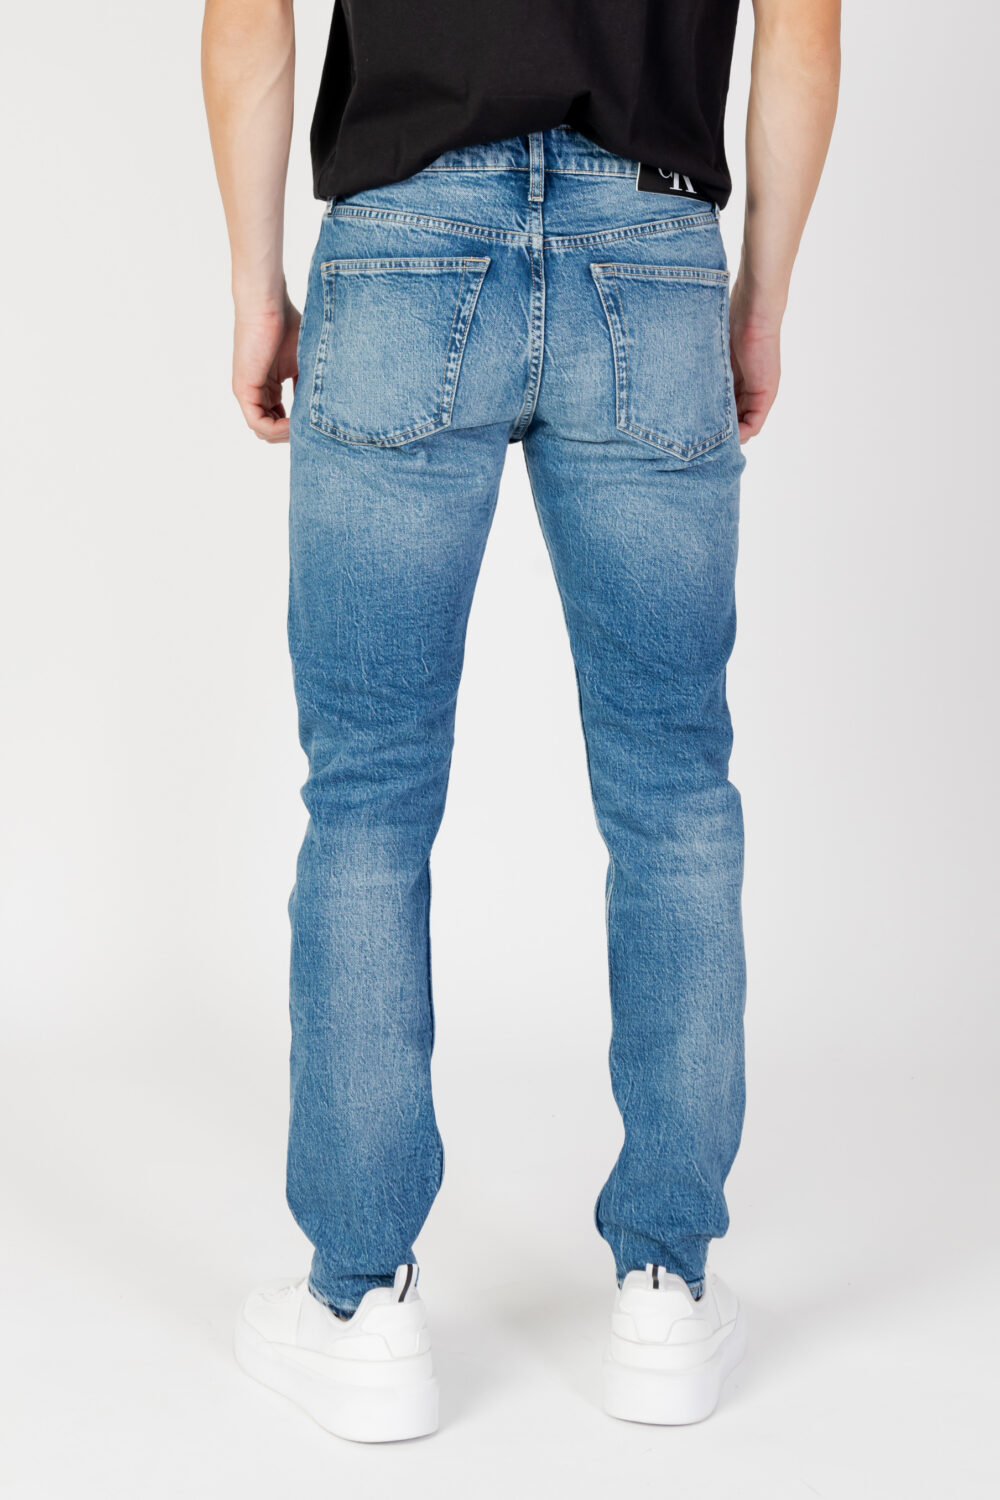 Jeans Tapered Calvin Klein Jeans slim taper Denim - Foto 3